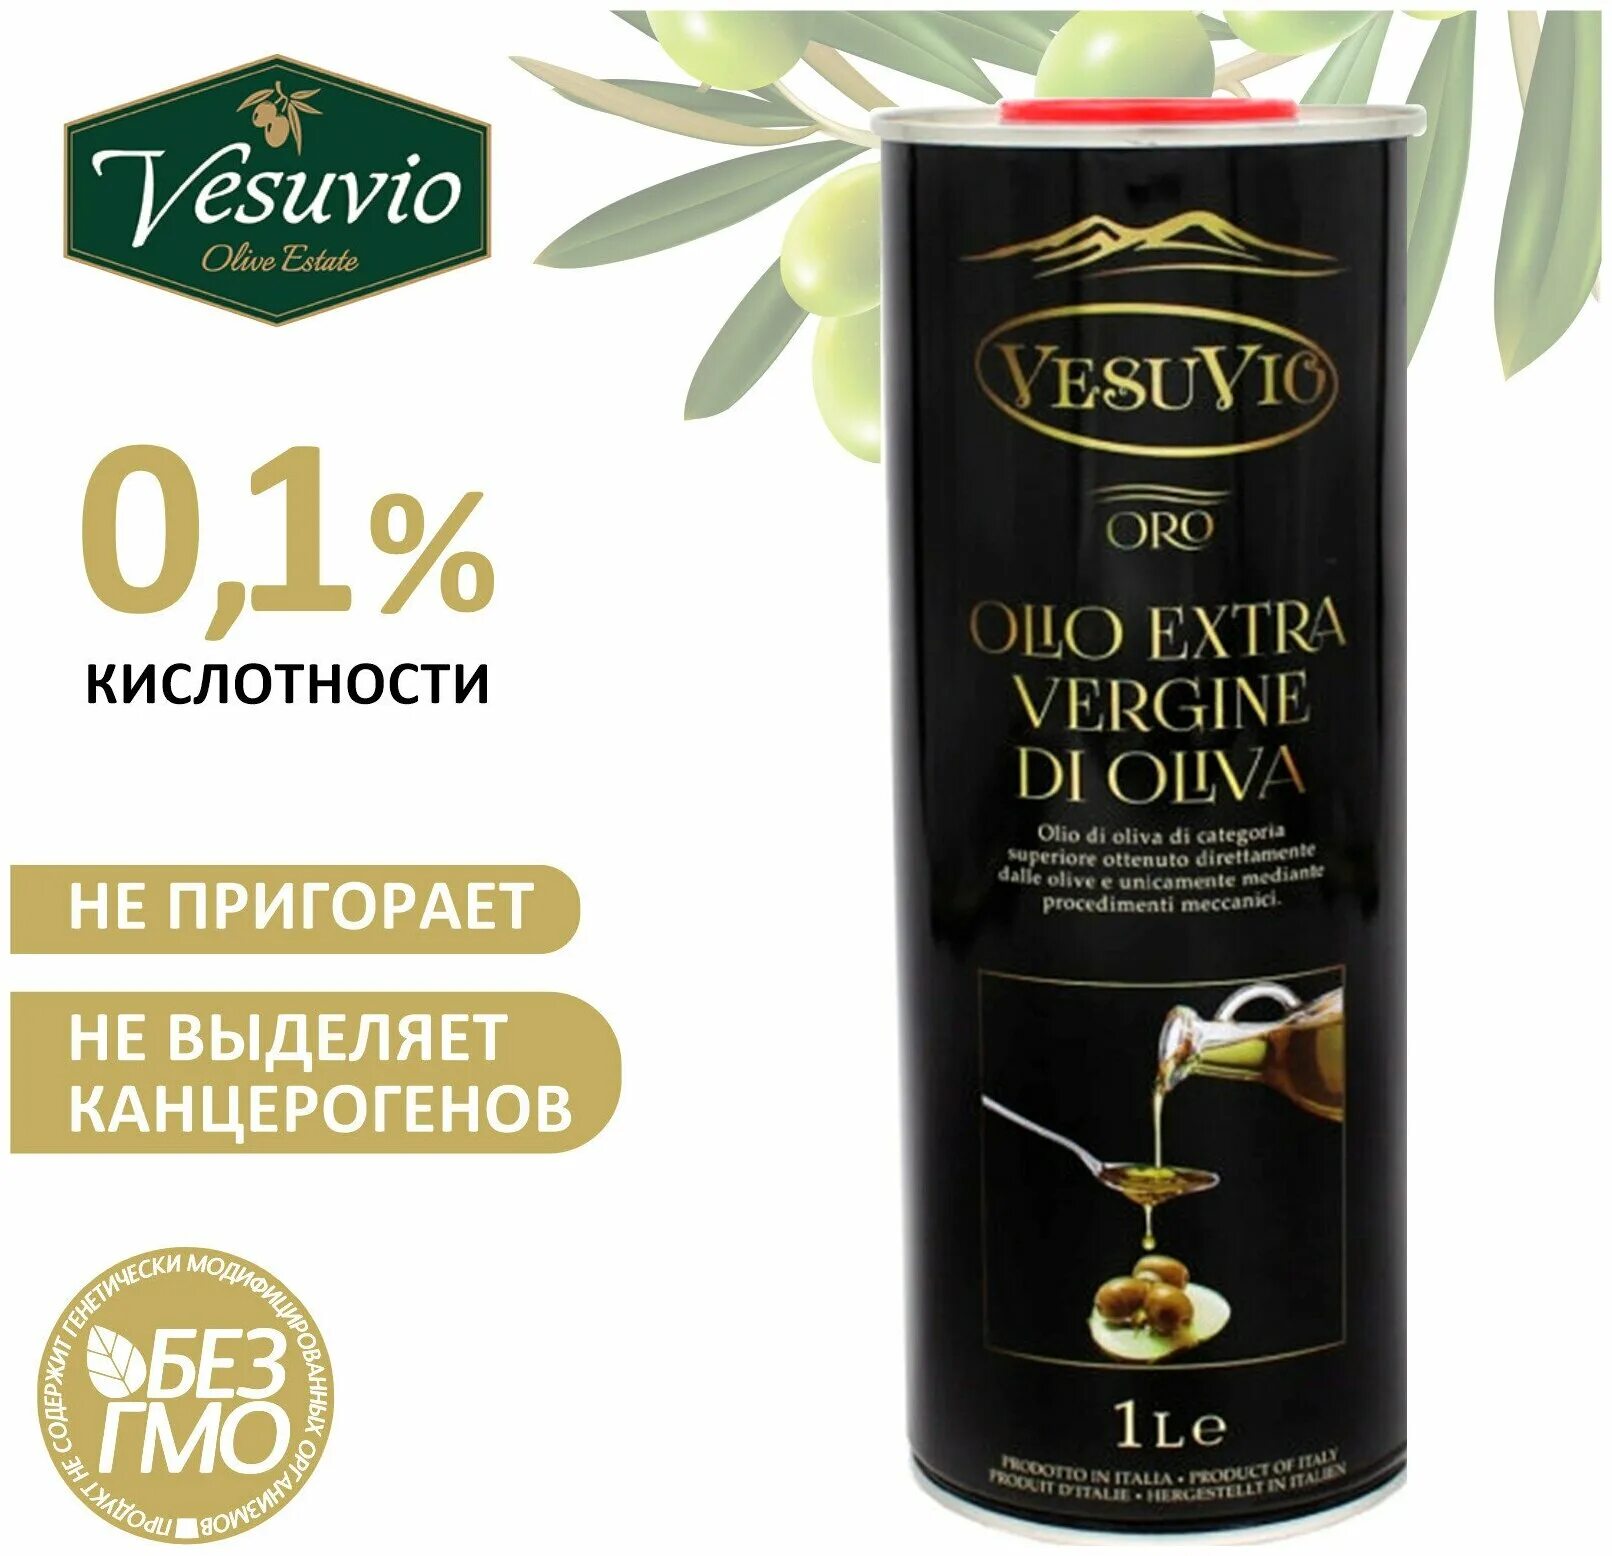 Масло оливковое extra virgin 1 литр. Vesuvio масло оливковое. Оливковое масло 1 Vesuvio. Масло оливковое Extra Virgin 1л. Масло авокадо Vesuvio.